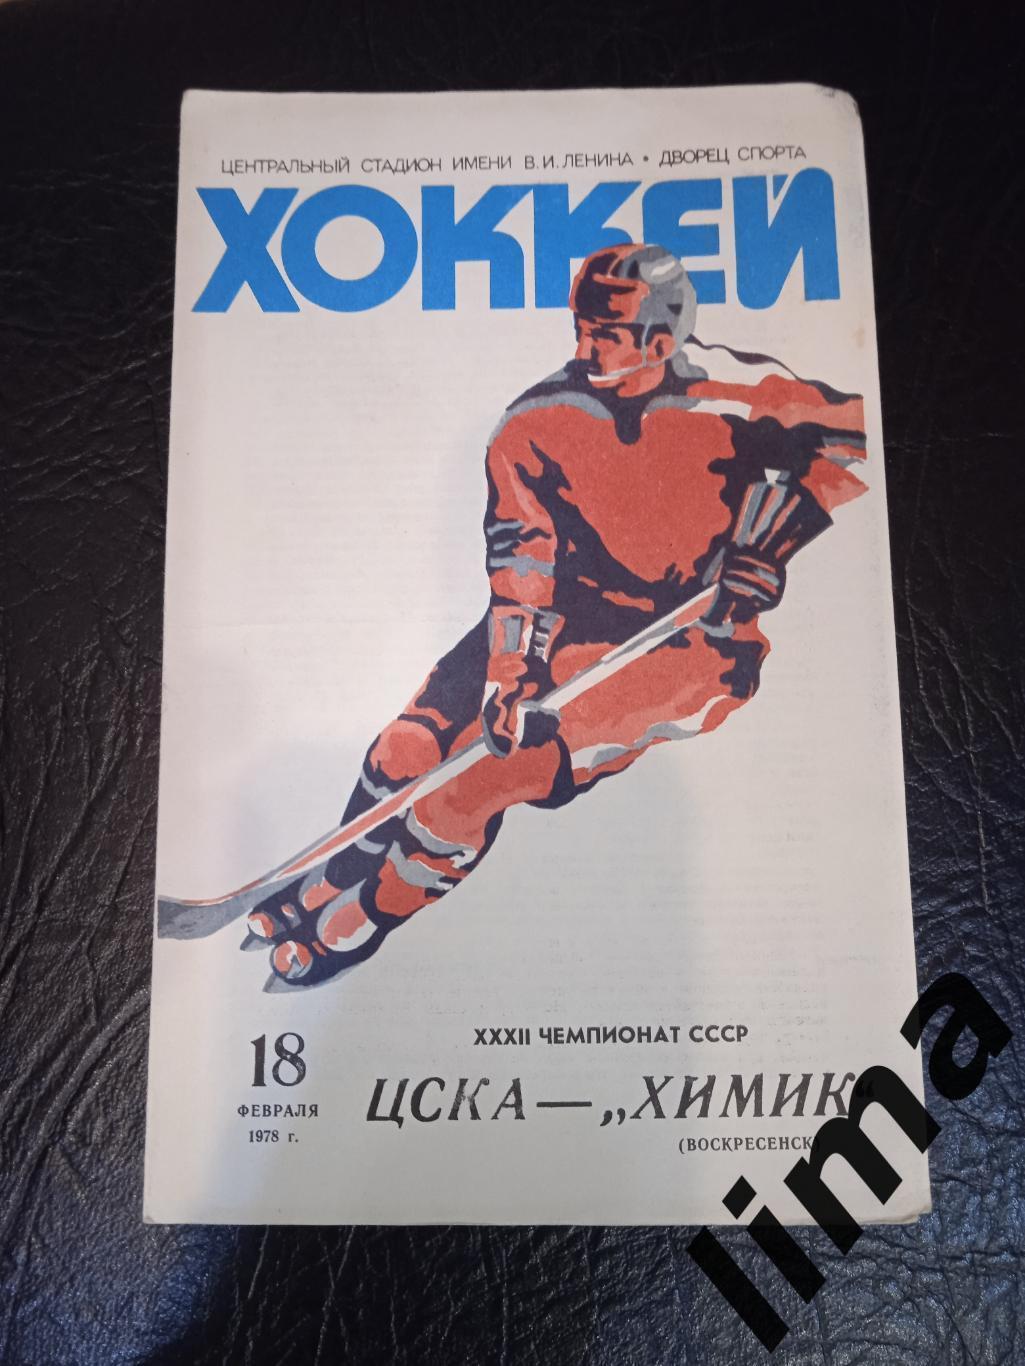 ЦСКА Москва - Химик 18.02.1978